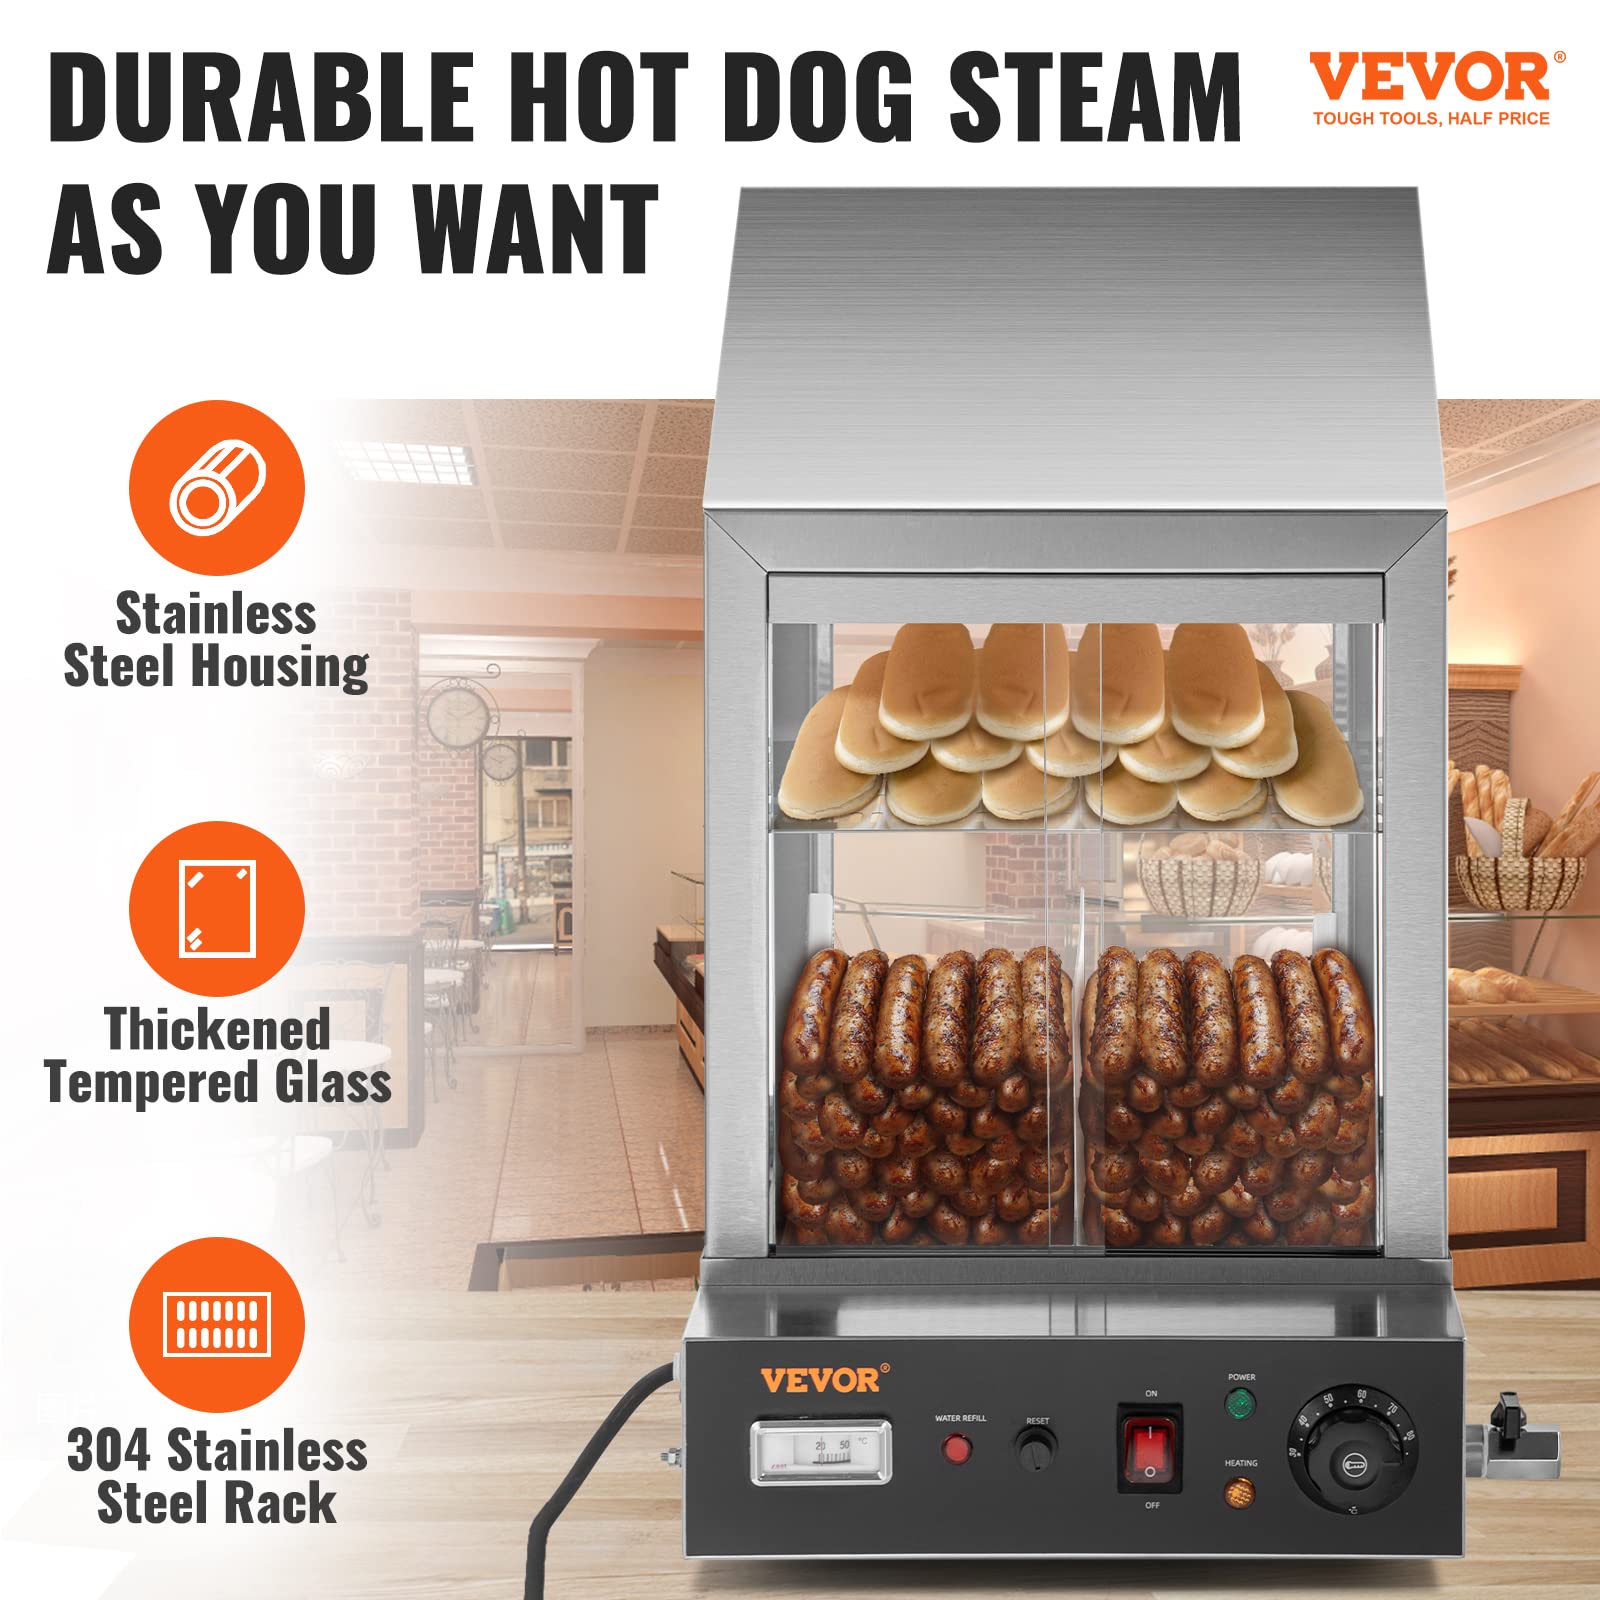 VEVOR New Model hot Dog Steamer, 36 L, Silver